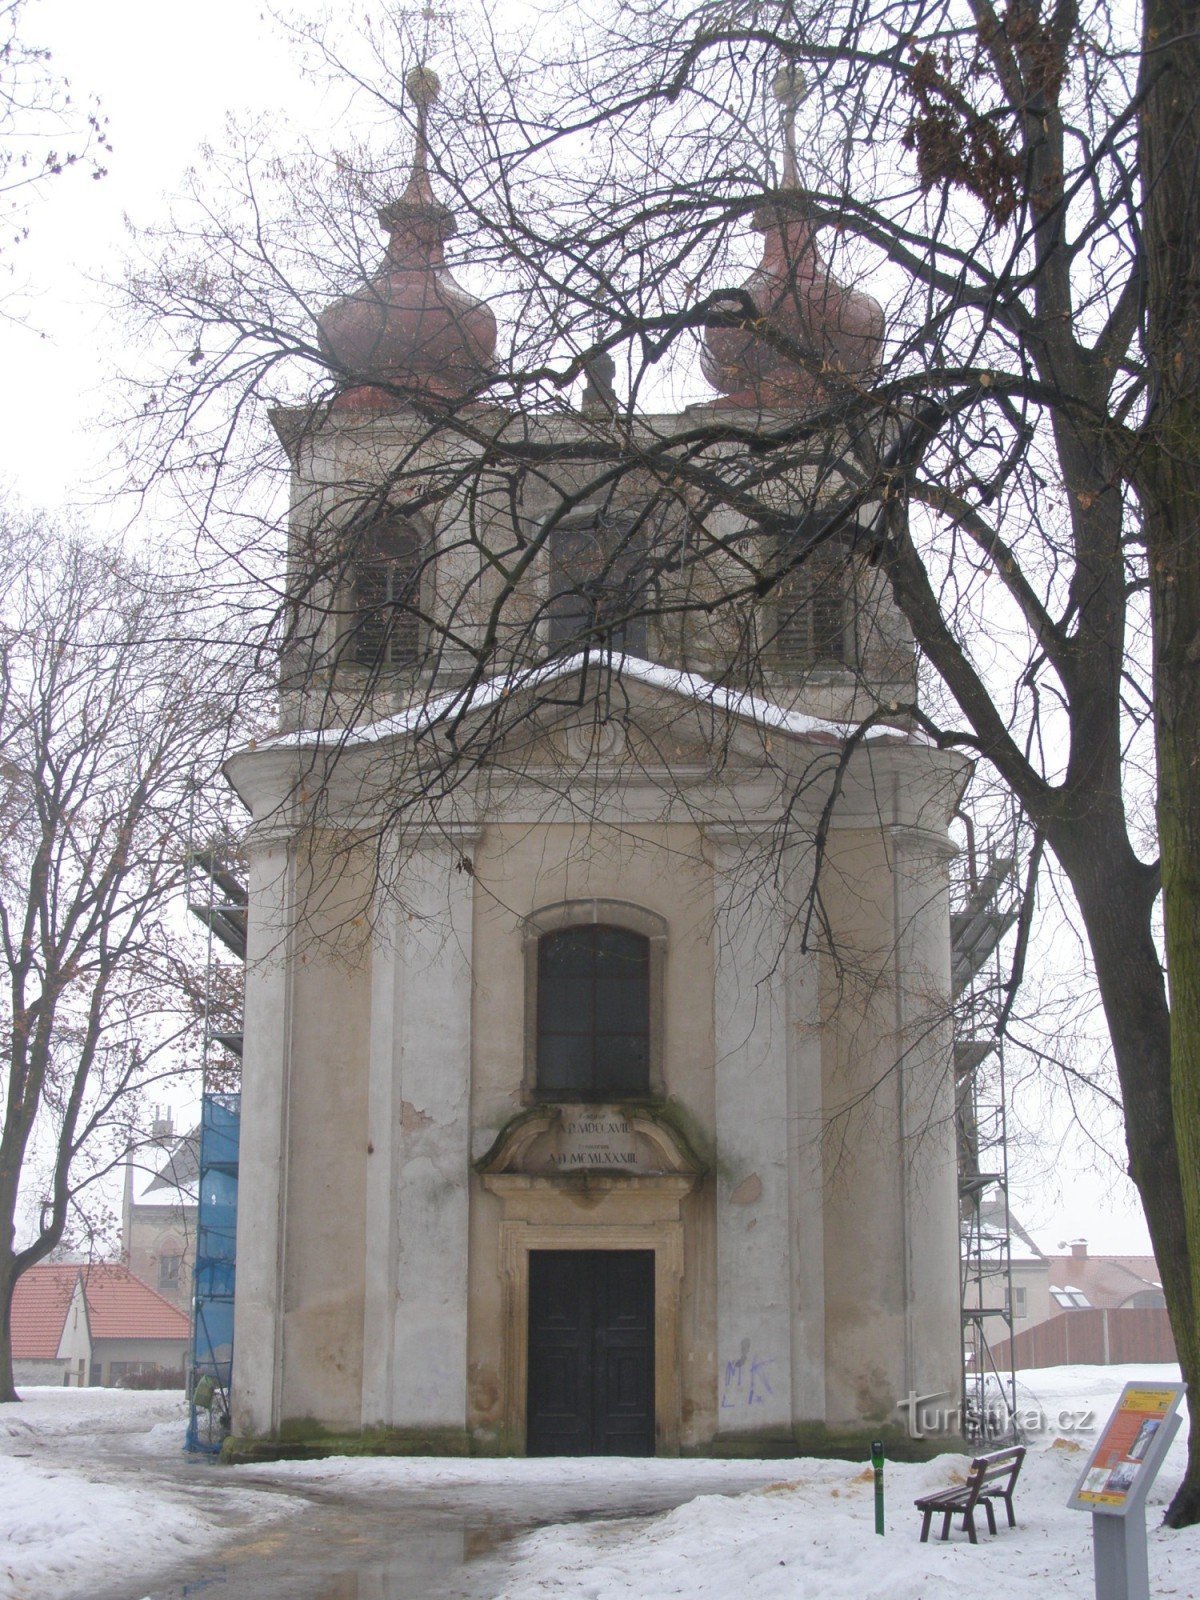 Nový Bydžov - Kościół Świętej Trójcy